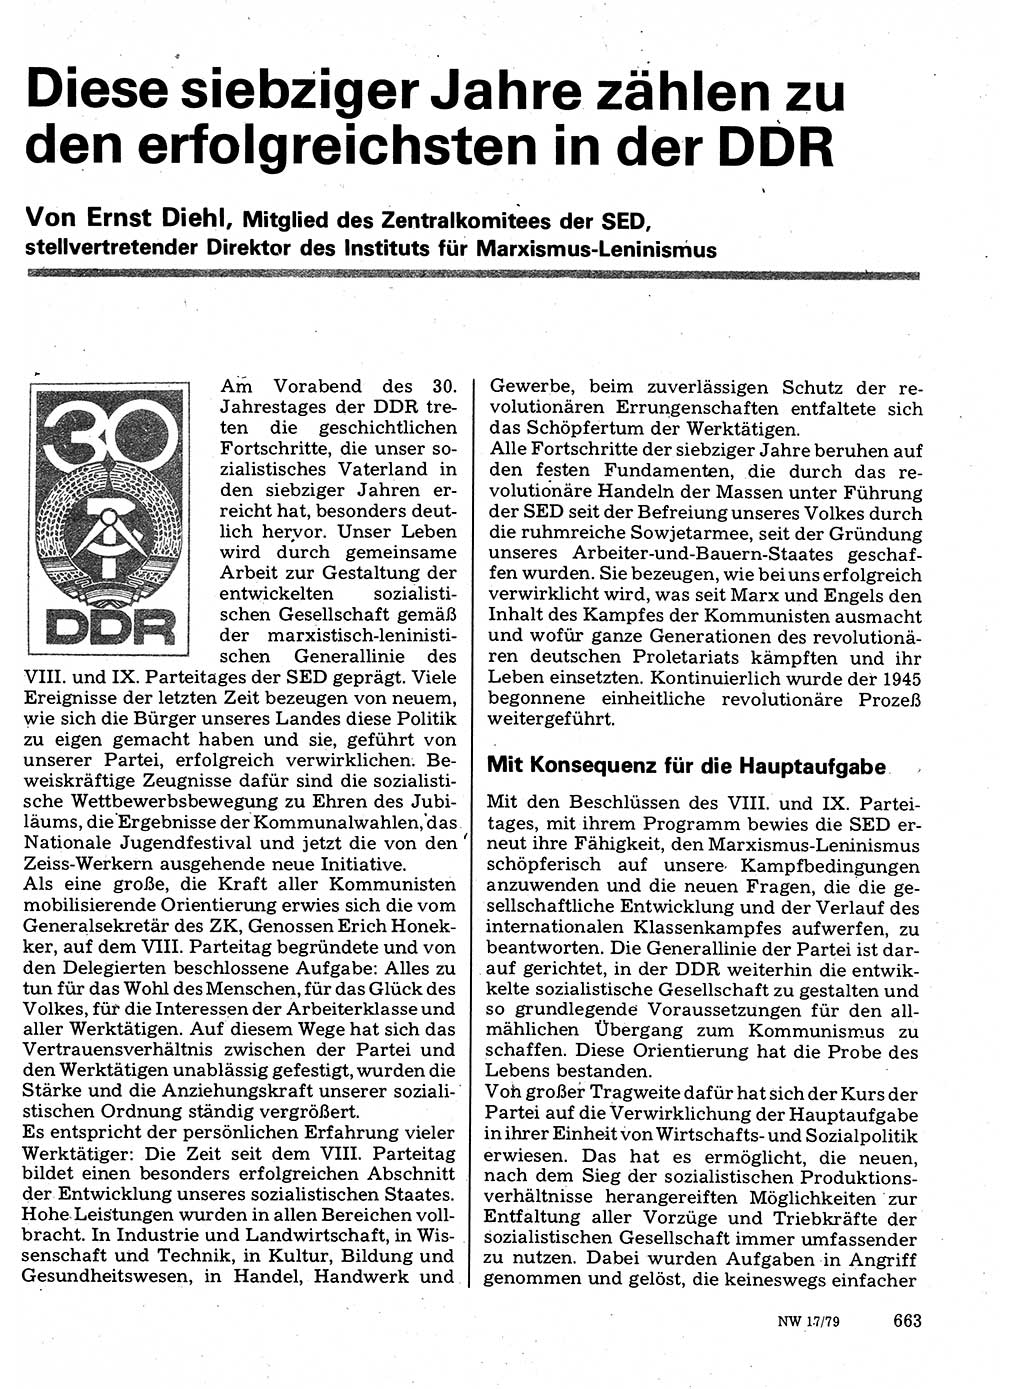 Neuer Weg (NW), Organ des Zentralkomitees (ZK) der SED (Sozialistische Einheitspartei Deutschlands) für Fragen des Parteilebens, 34. Jahrgang [Deutsche Demokratische Republik (DDR)] 1979, Seite 663 (NW ZK SED DDR 1979, S. 663)